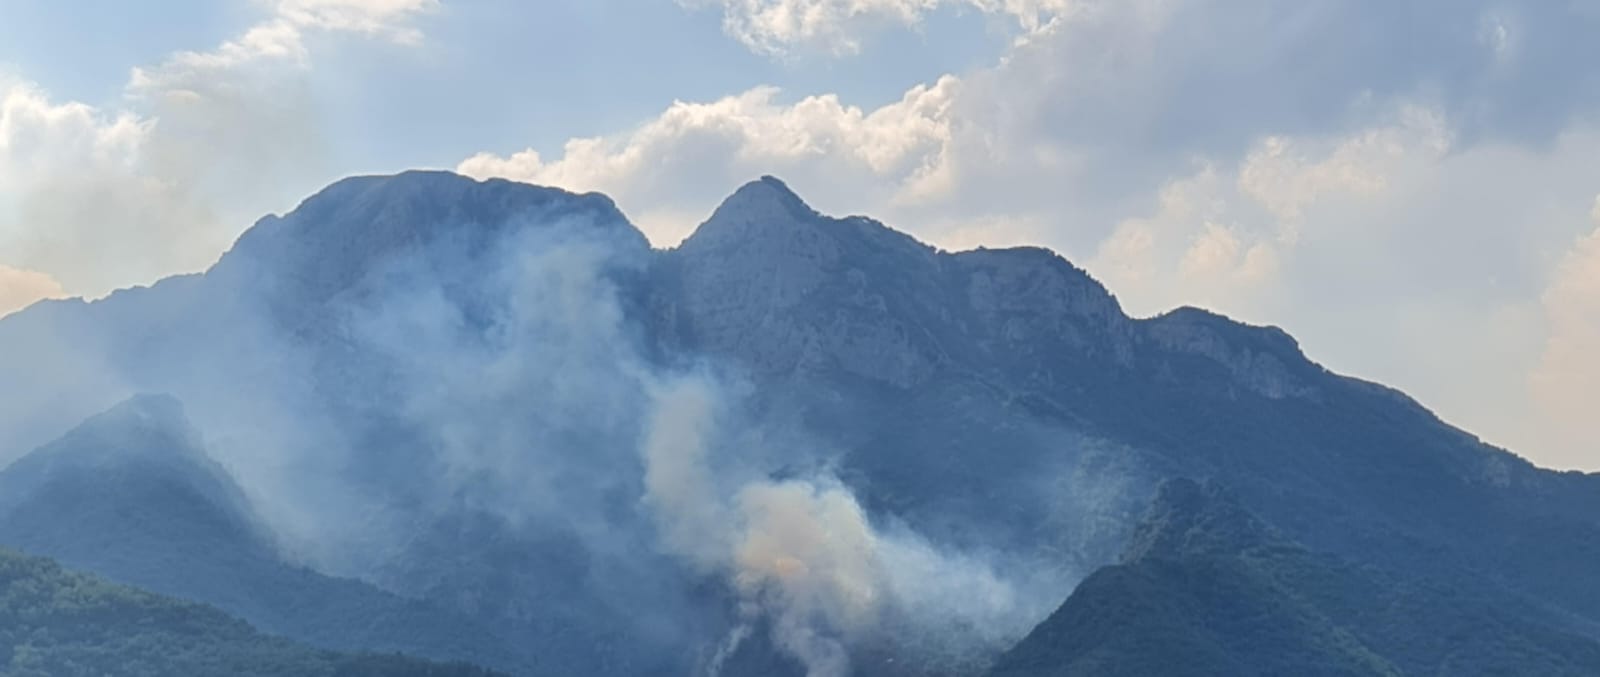 Incendio a Cava de Tirreni, le fiamme lambiscono la frazione Sant’Arcangelo